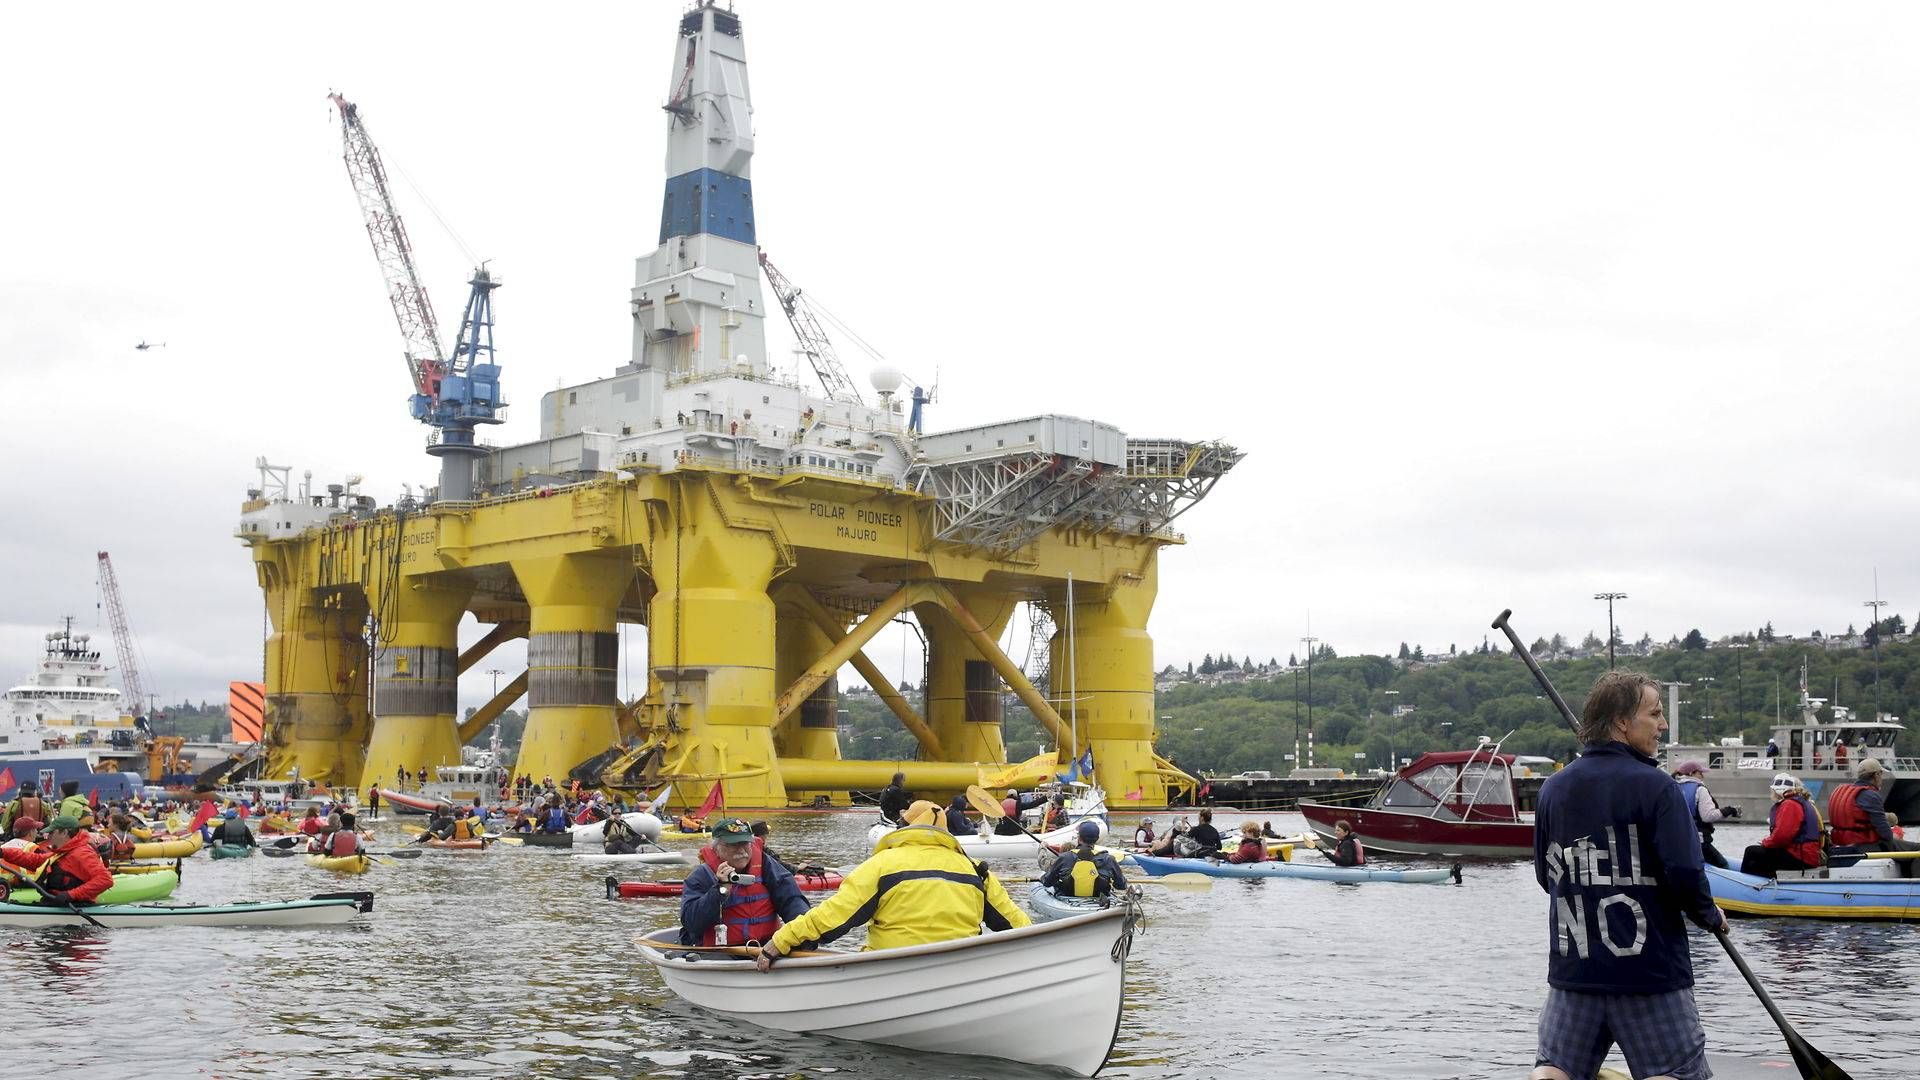 Demonstranter flokkes om Shells olierig Polar Pioneer ved havnen i Seattle. Fremover bliver klimakampene i højere grad taget i retten, hvis man spørger hos Greenpeace. | Foto: Jason Redmond/Reuters/Ritzau Scanpix